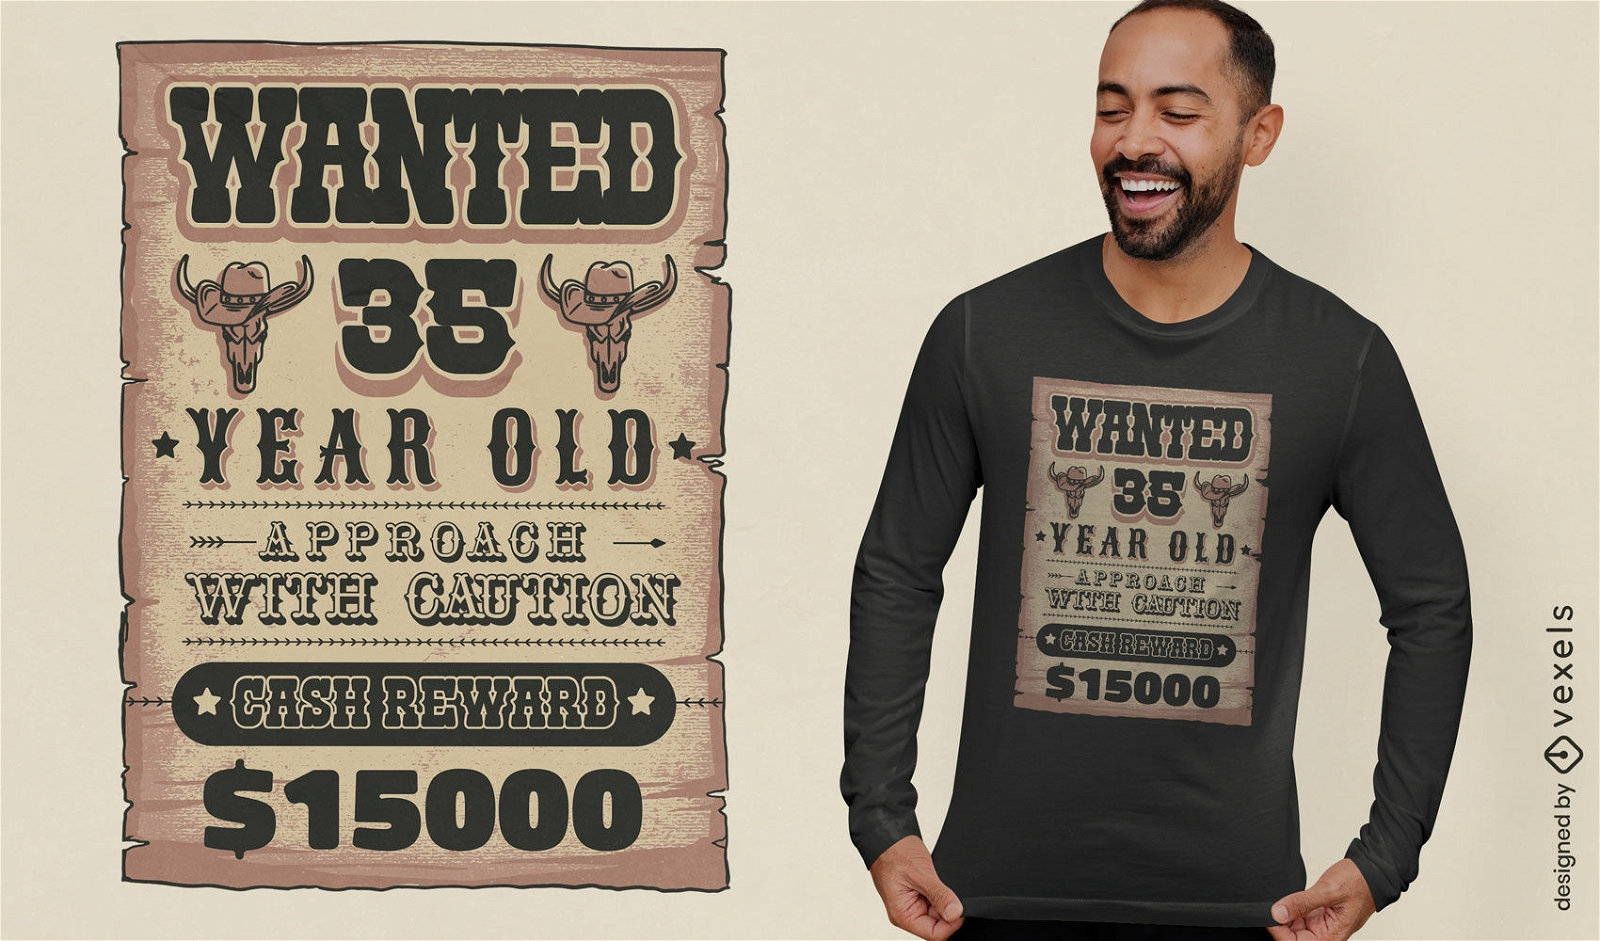 Wild-West-Geburtstagszeichen-T-Shirt-Design